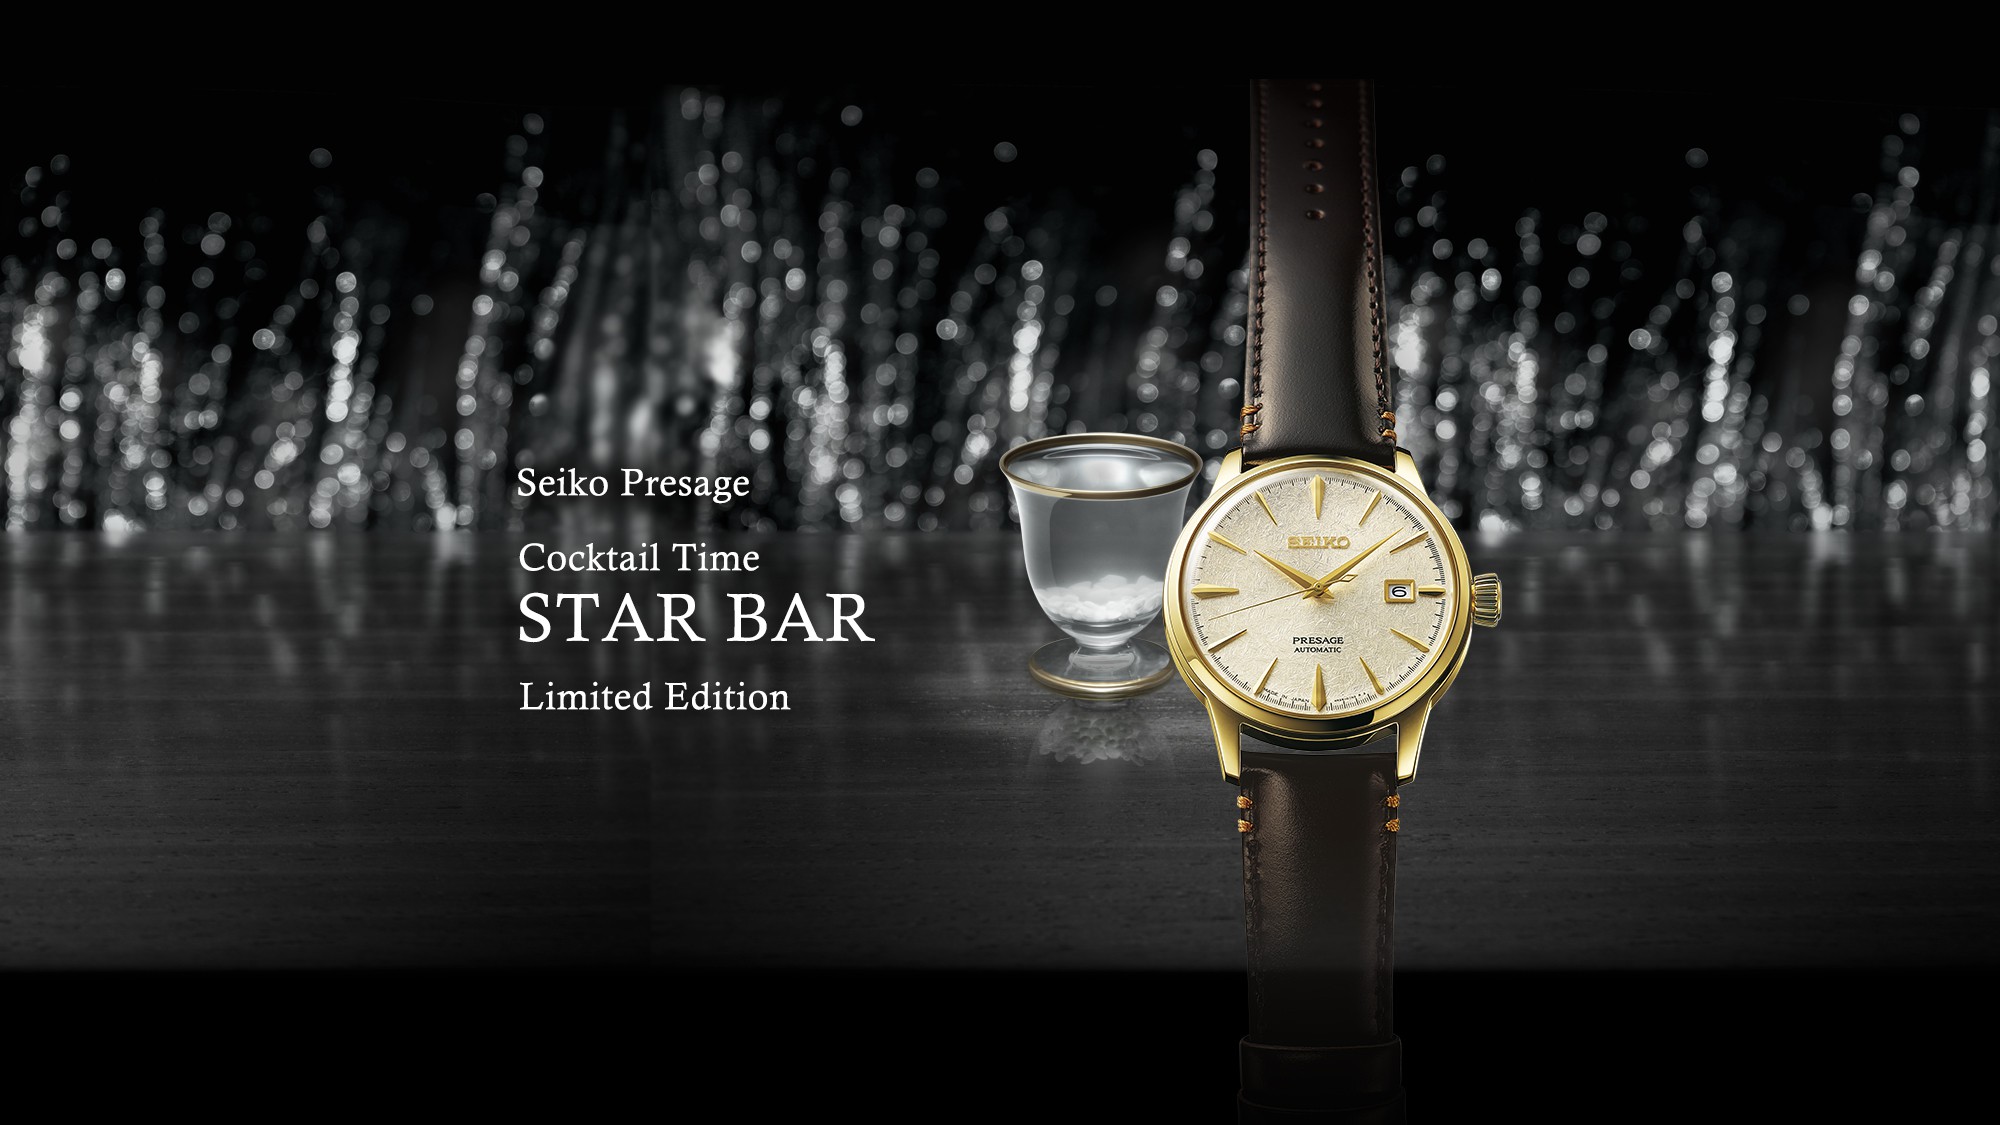 Seiko Presage Cocktail Time - Edición Limitada de Star Bar | Seiko 